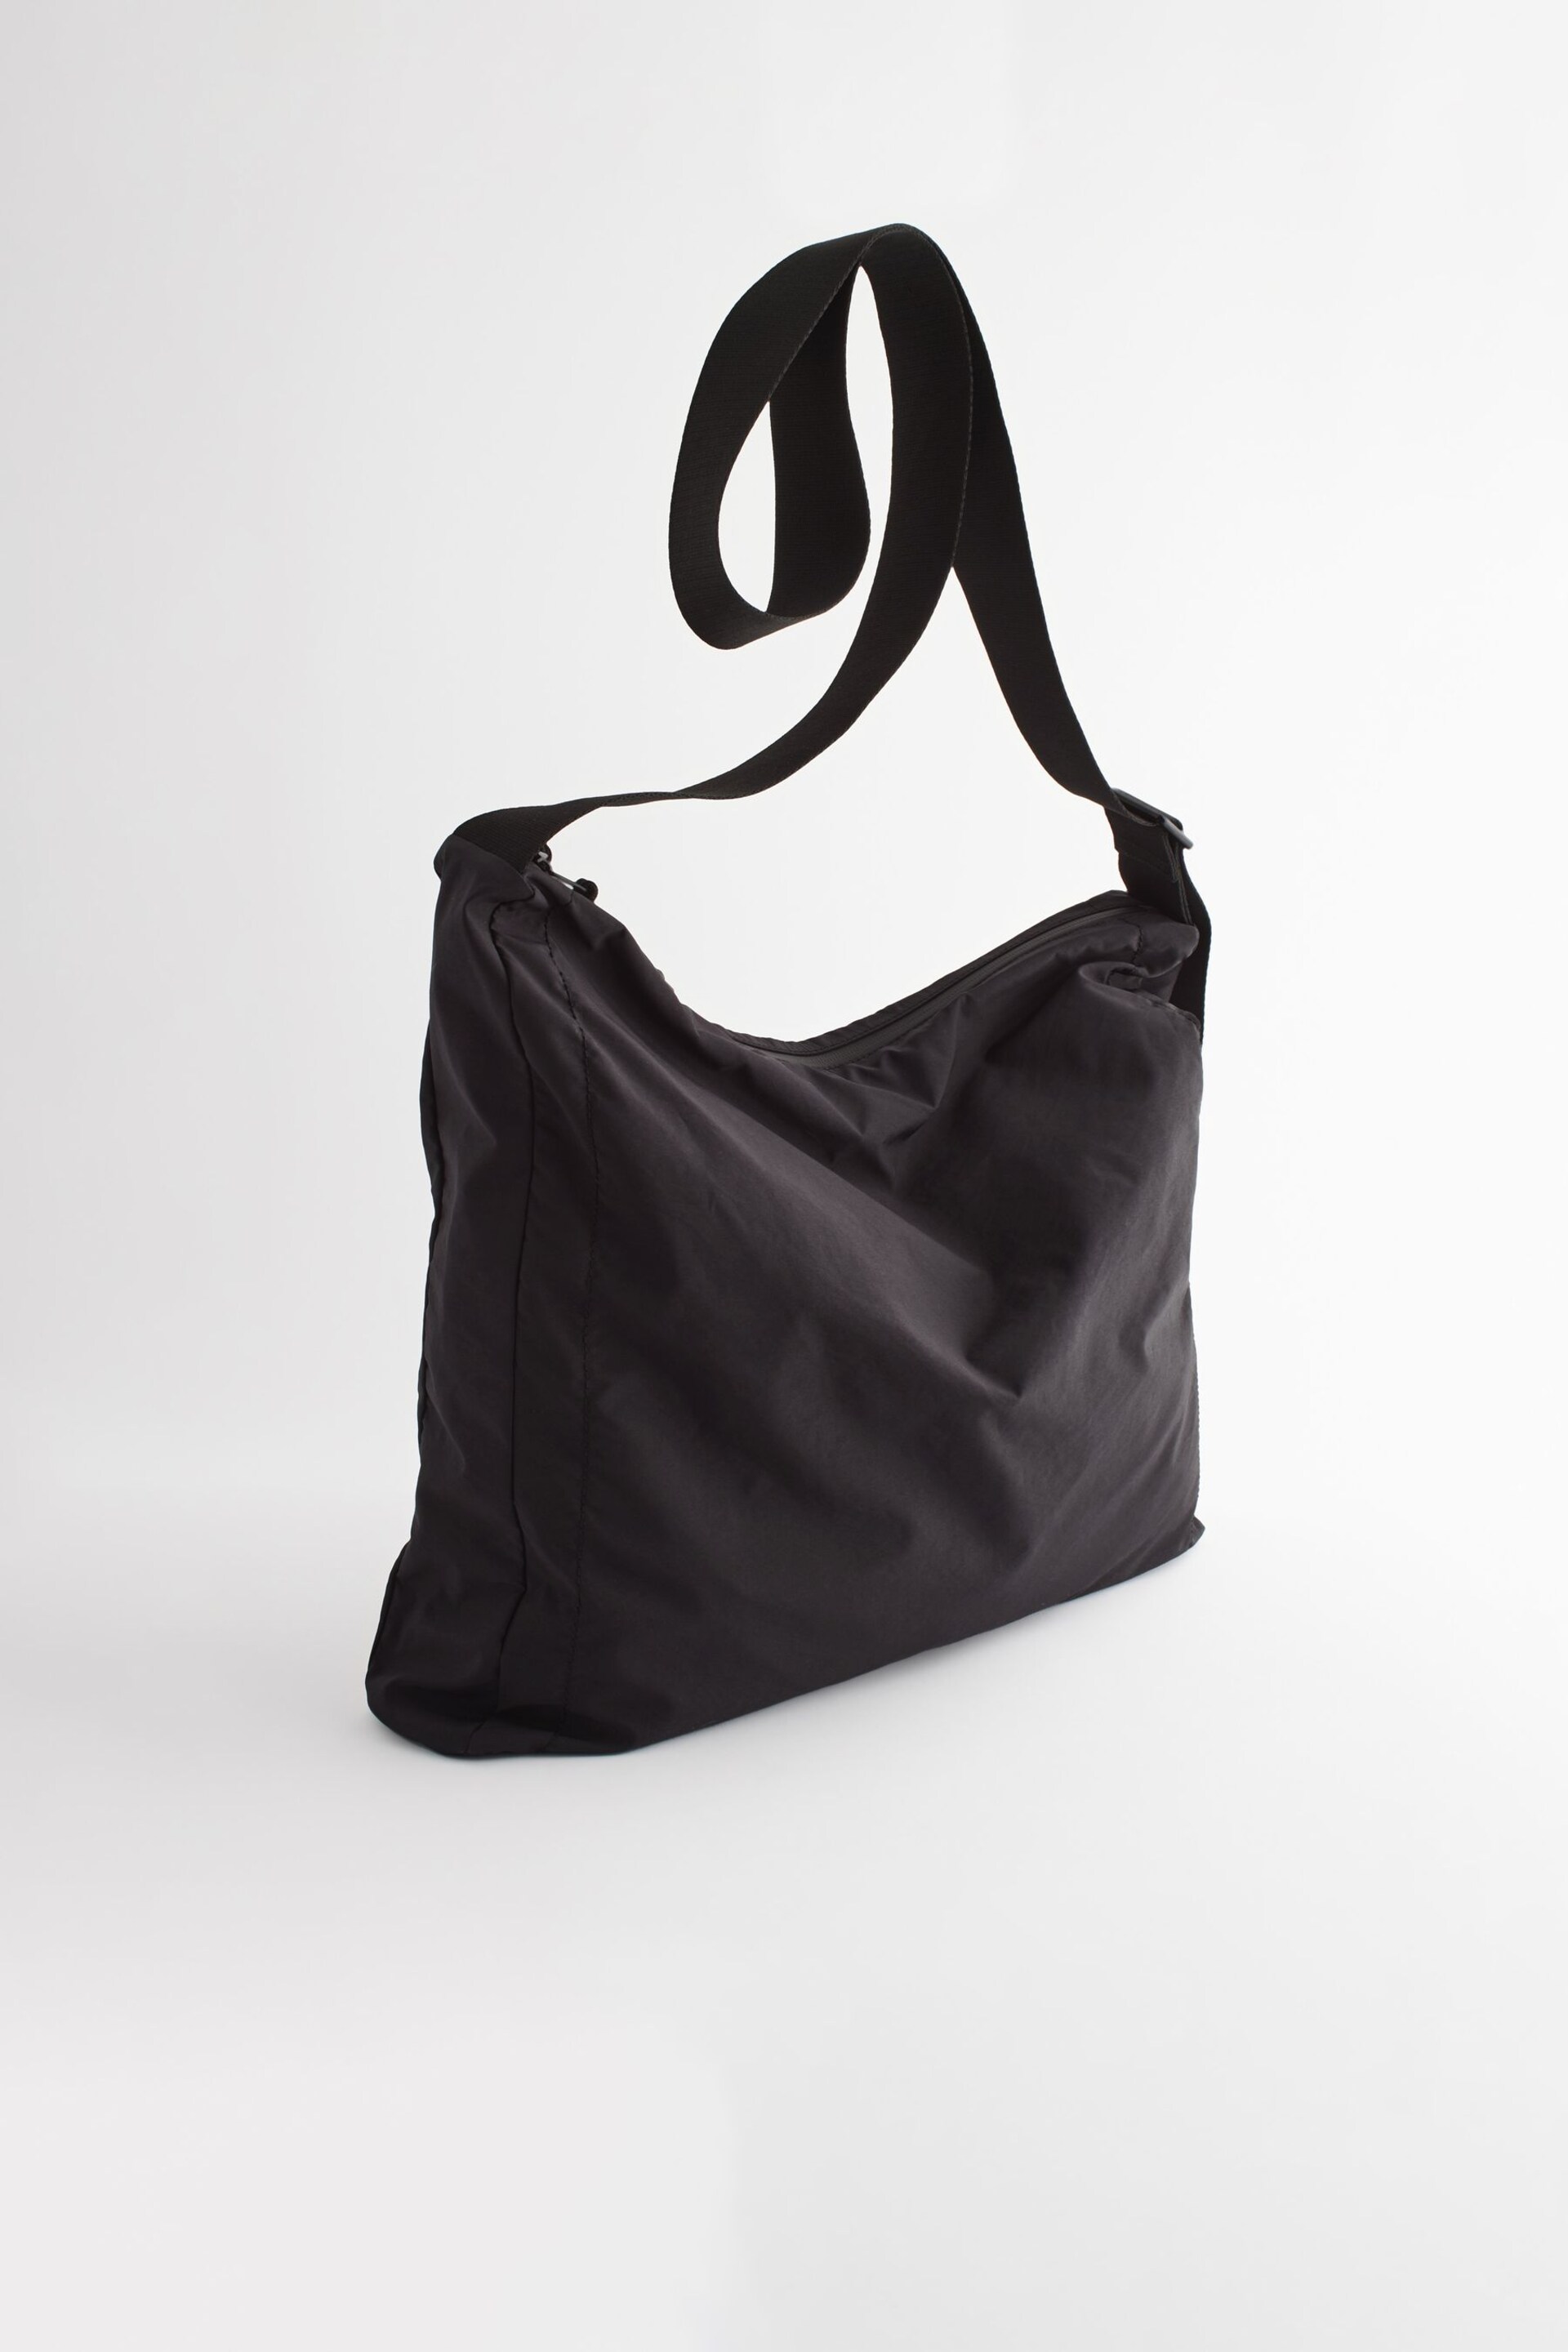 Black Nylon Messenger Bag - Image 4 of 7